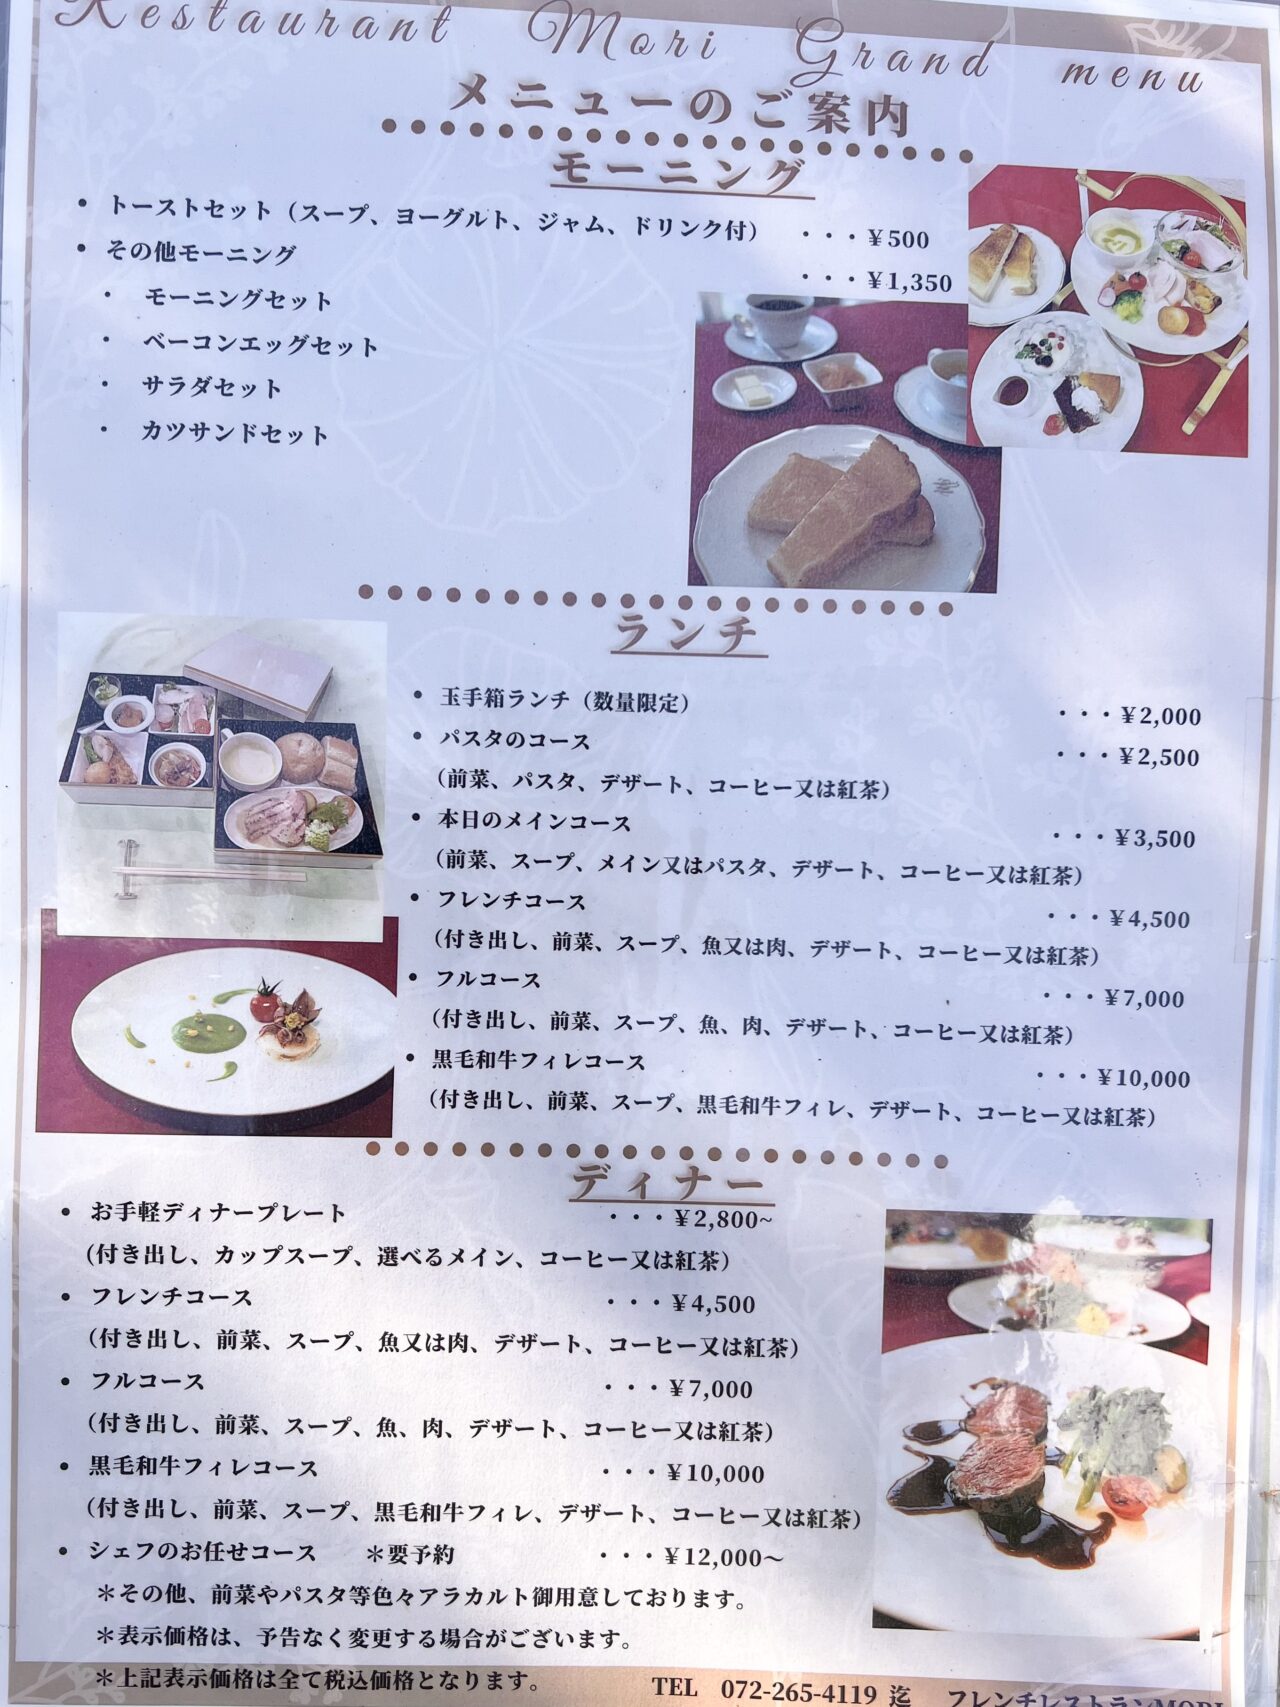 大阪府堺市にあるフレンチレストラン森のモーニングメニューです。